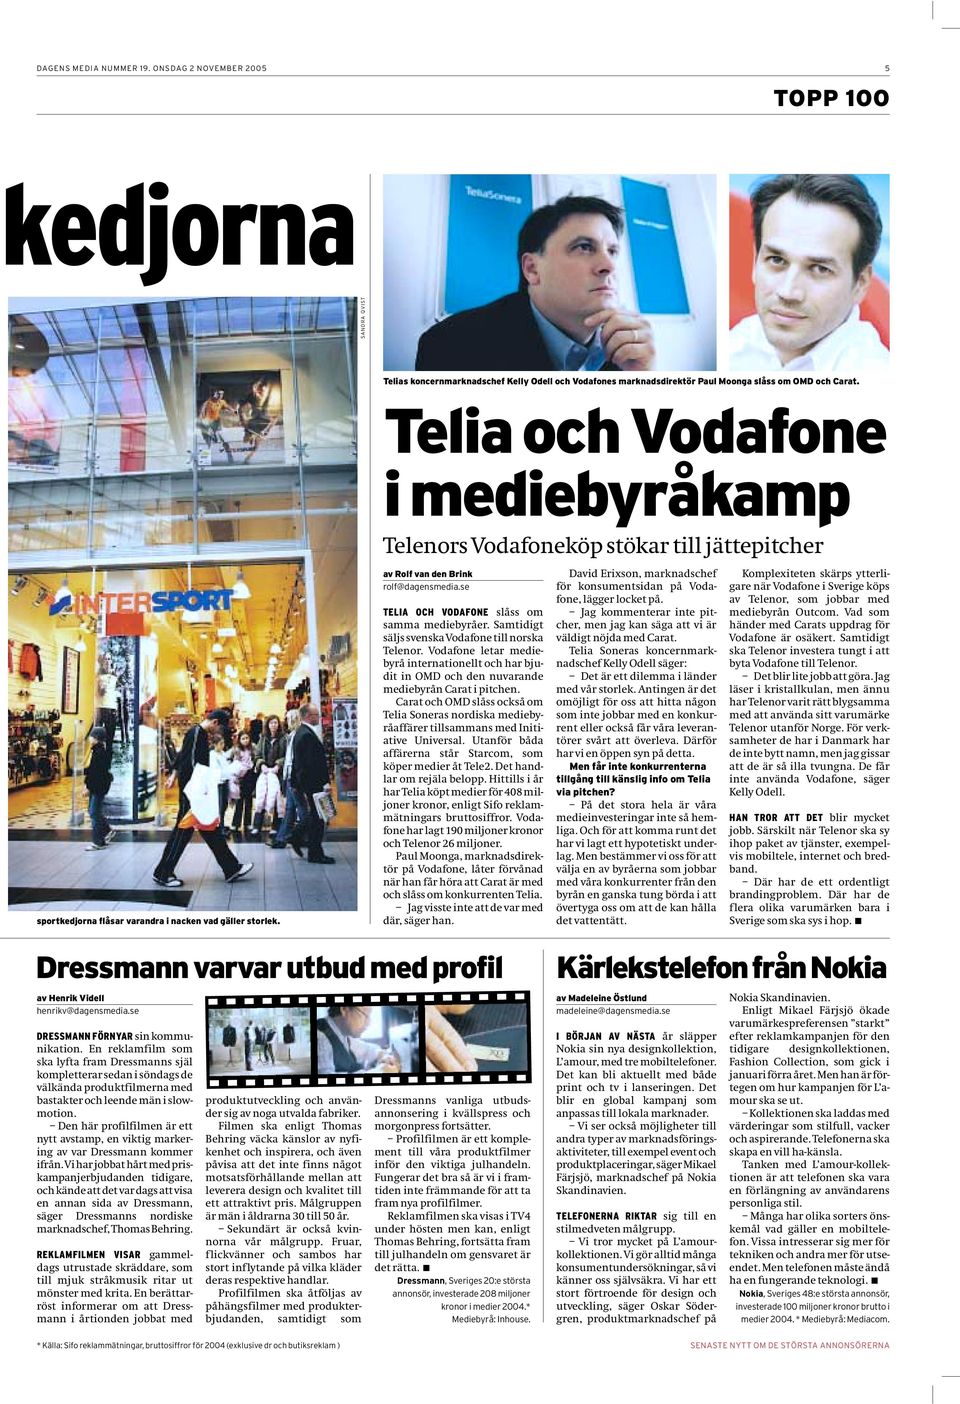 se TELIA OCH VODAFONE slåss om samma mediebyråer. Samtidigt säljs svenska Vodafone till norska Telenor.